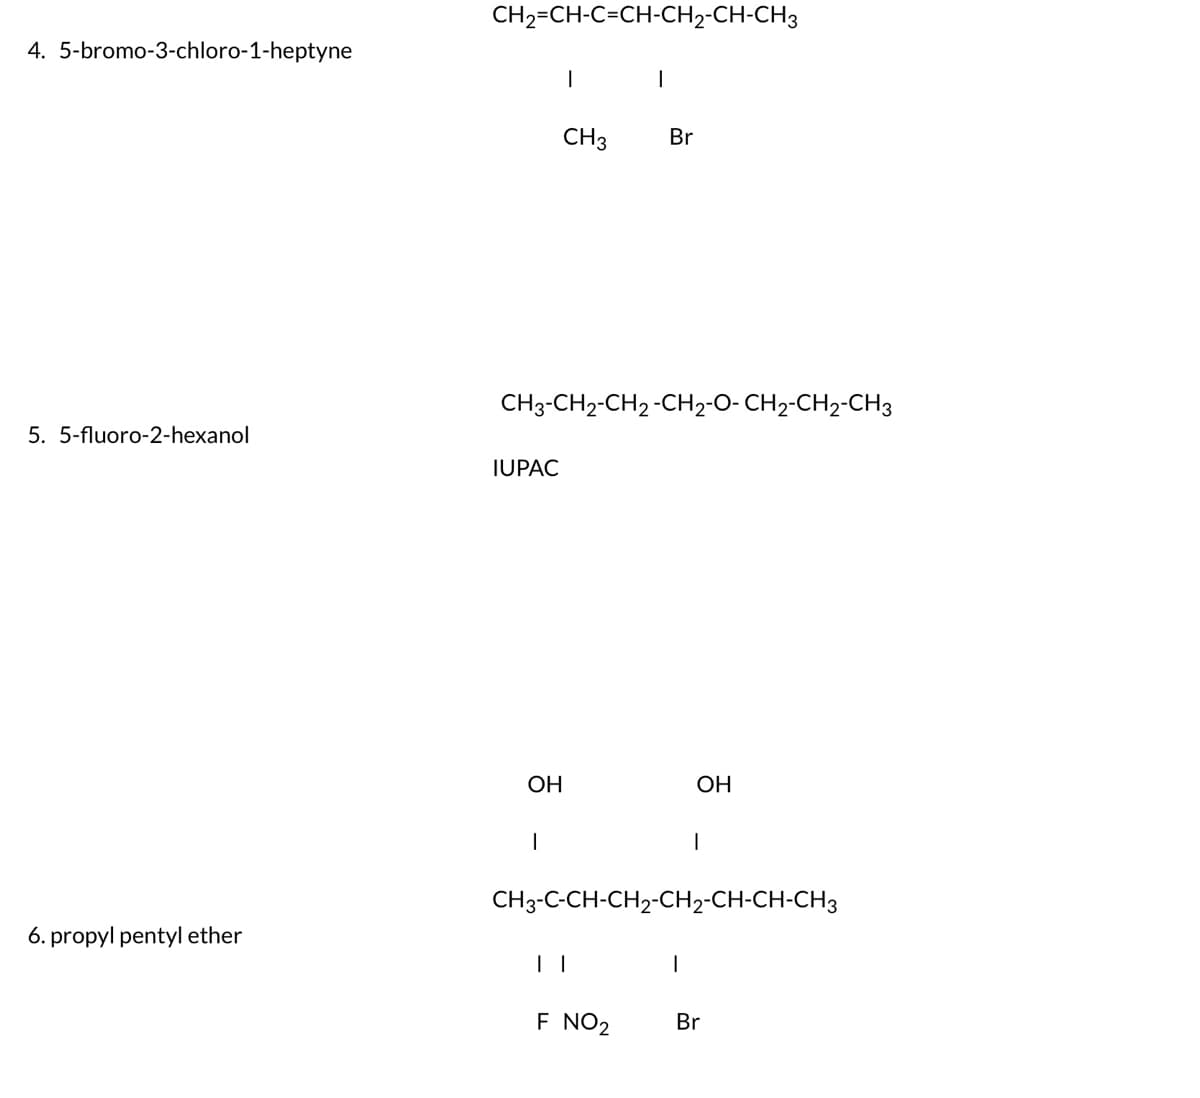 4. 5-bromo-3-chloro-1-heptyne
5. 5-fluoro-2-hexanol
6. propyl pentyl ether
CH2=CH-C=CH-CH2-CH-CH3
IUPAC
OH
I
CH3-CH2-CH 2 -CH₂-O- CH₂-CH2-CH3
|
CH 3
Br
| |
F NO₂
CH3-C-CH-CH₂-CH2-CH-CH-CH3
OH
I
1
Br